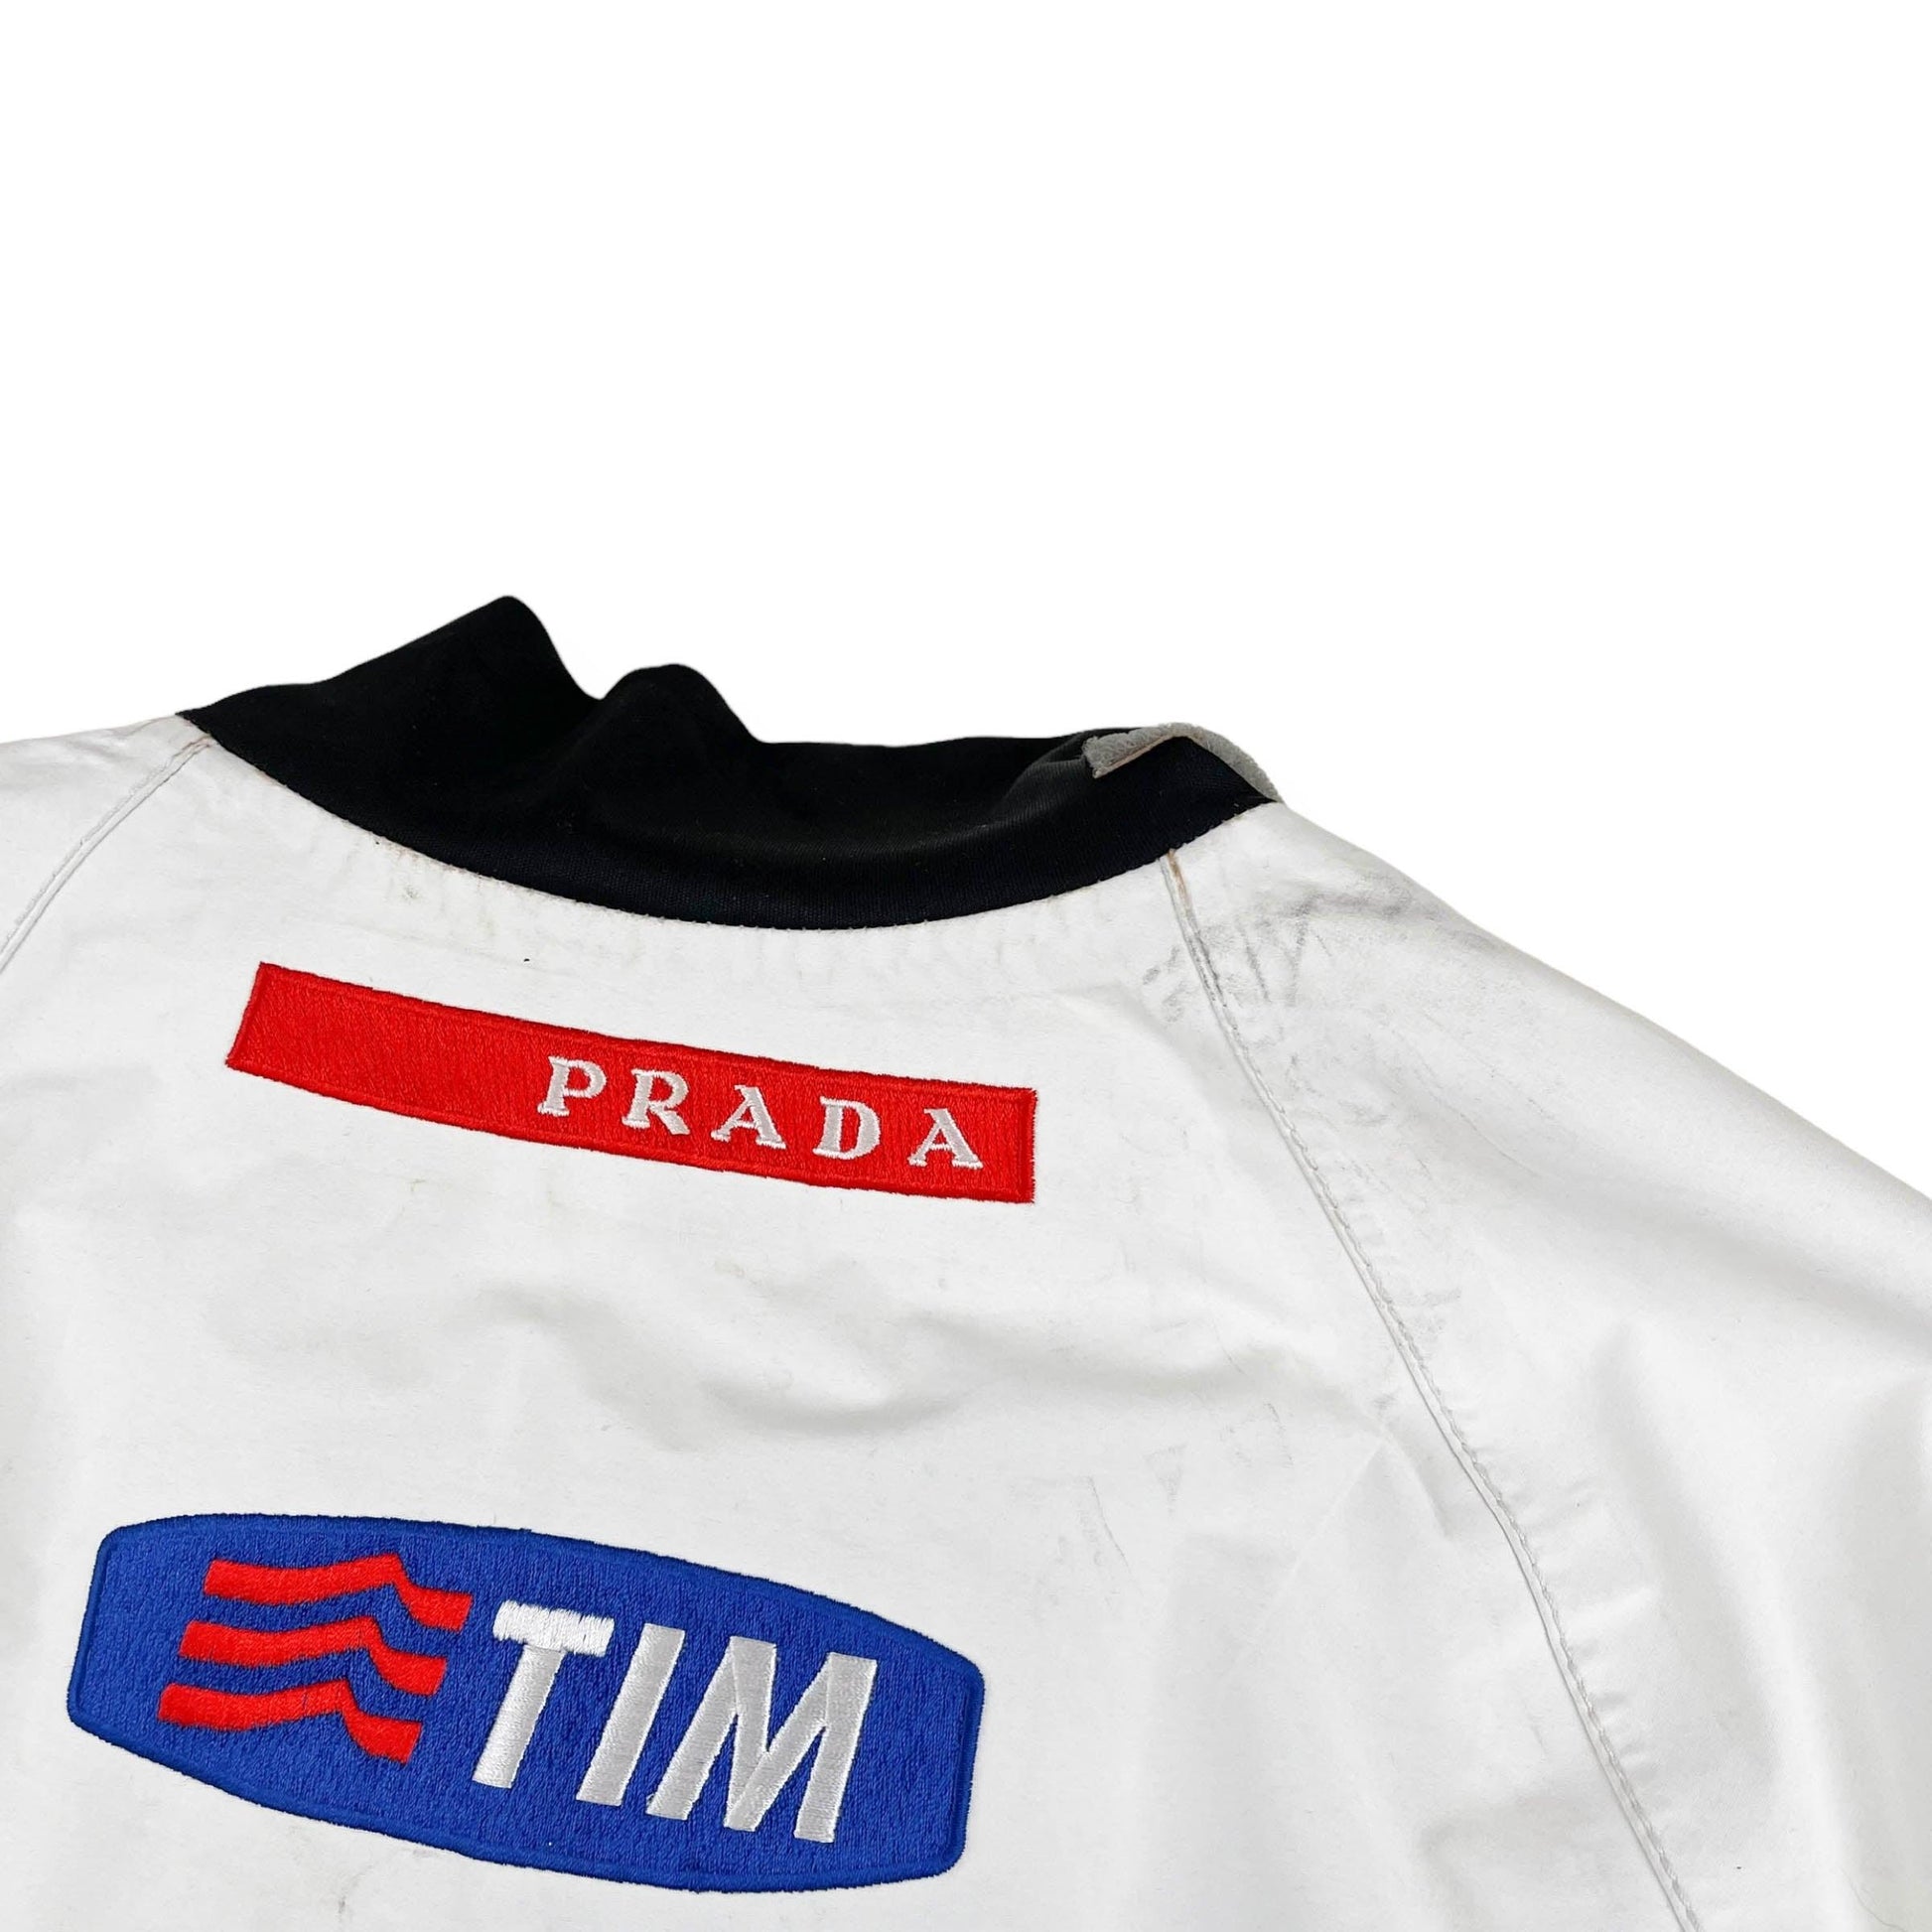 Vintage Prada Luna Rossa Goretex Jacket (XL) - Known Source